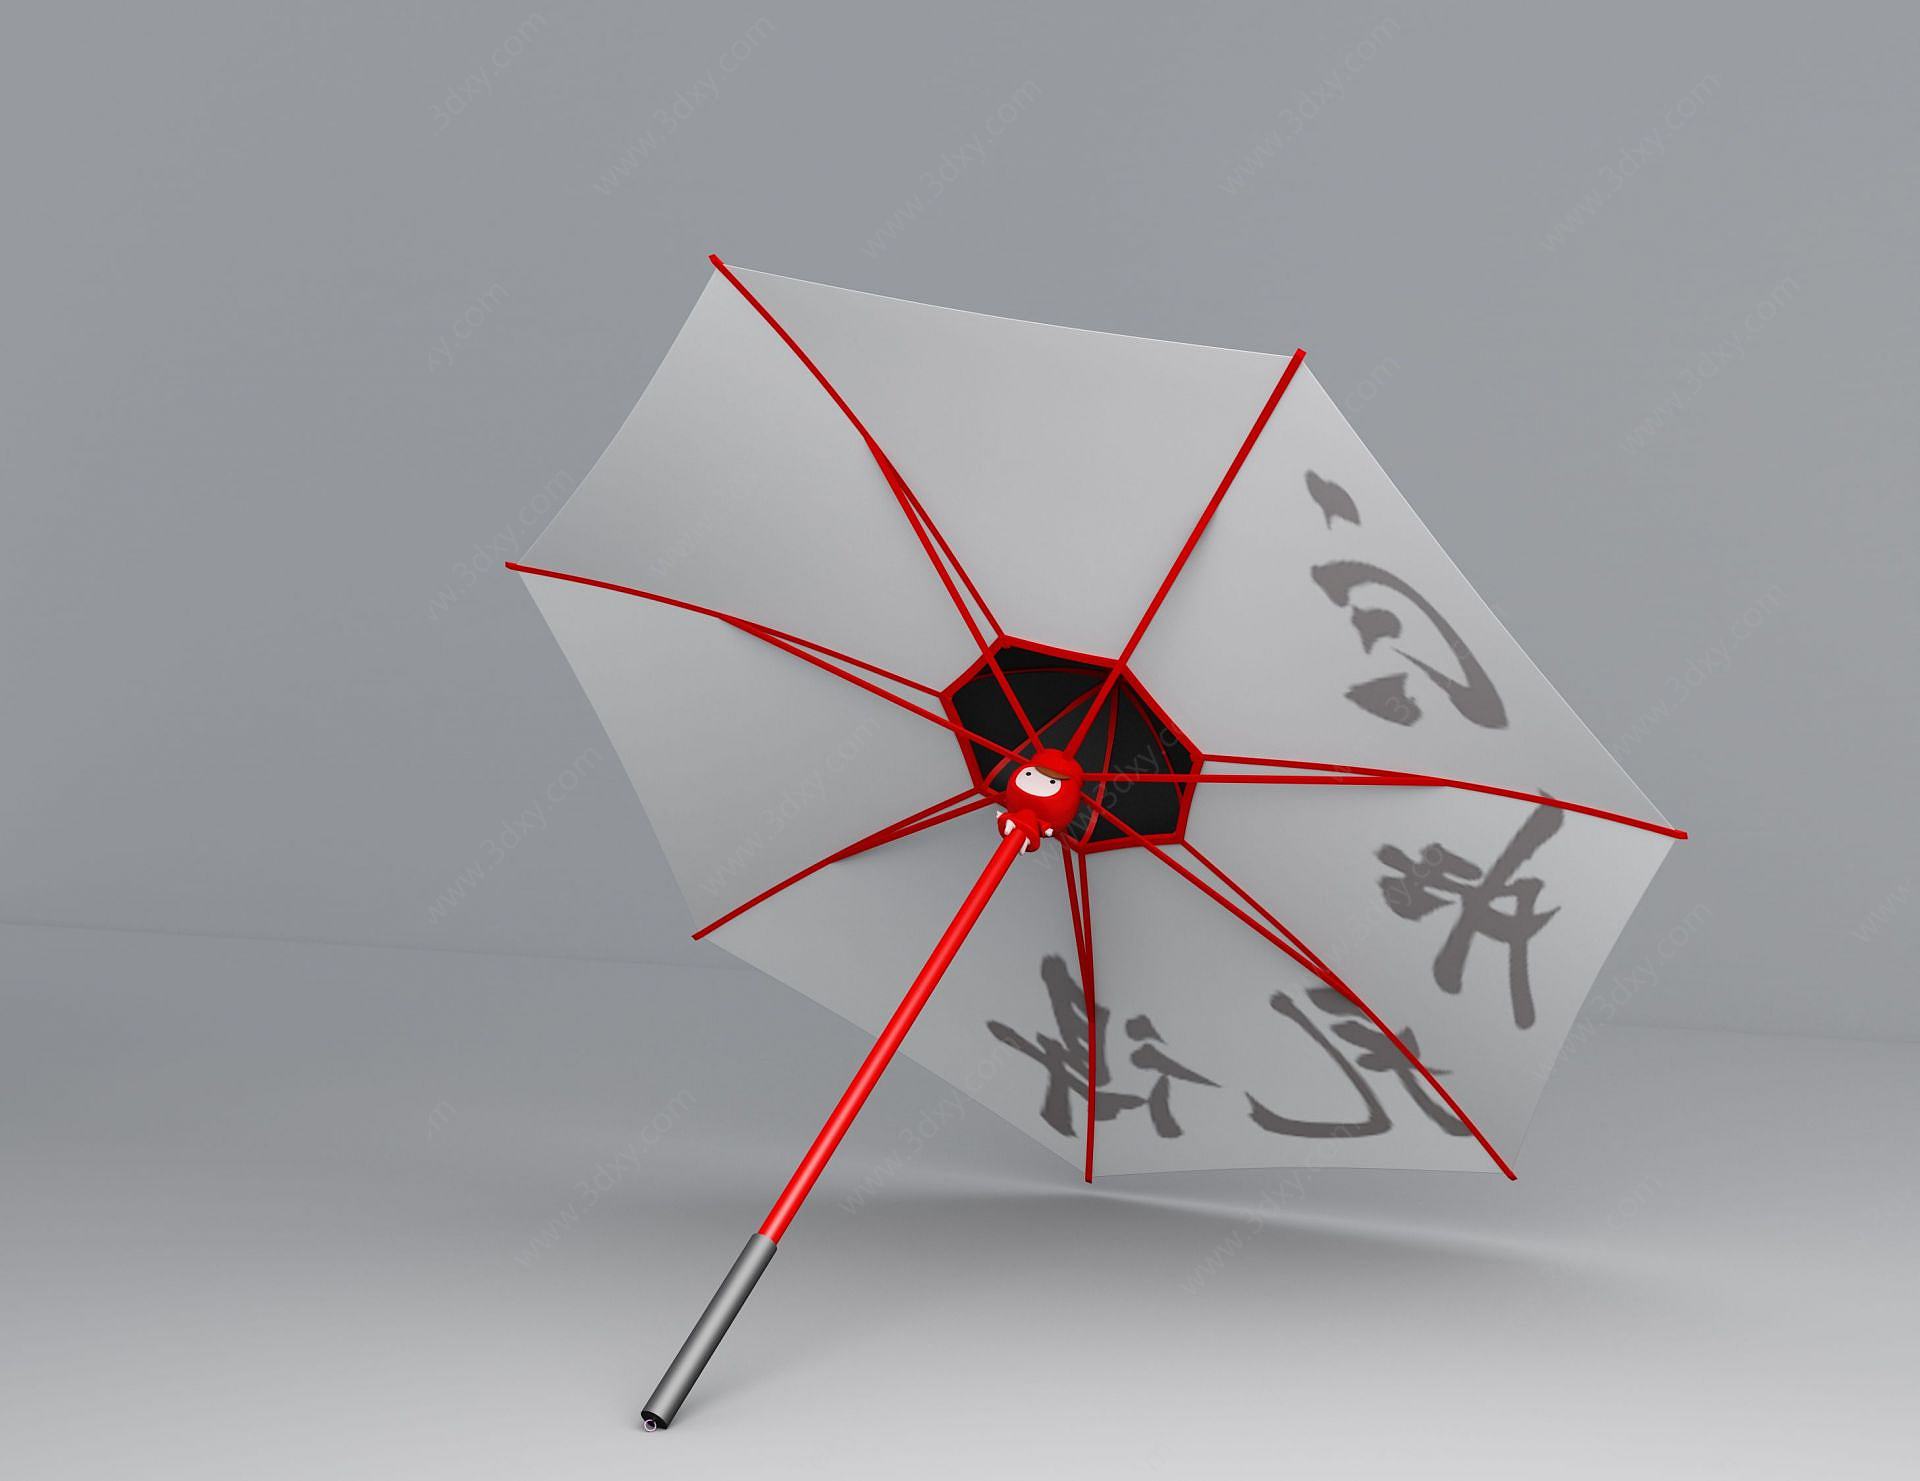 雨伞为主题的创意设计图片